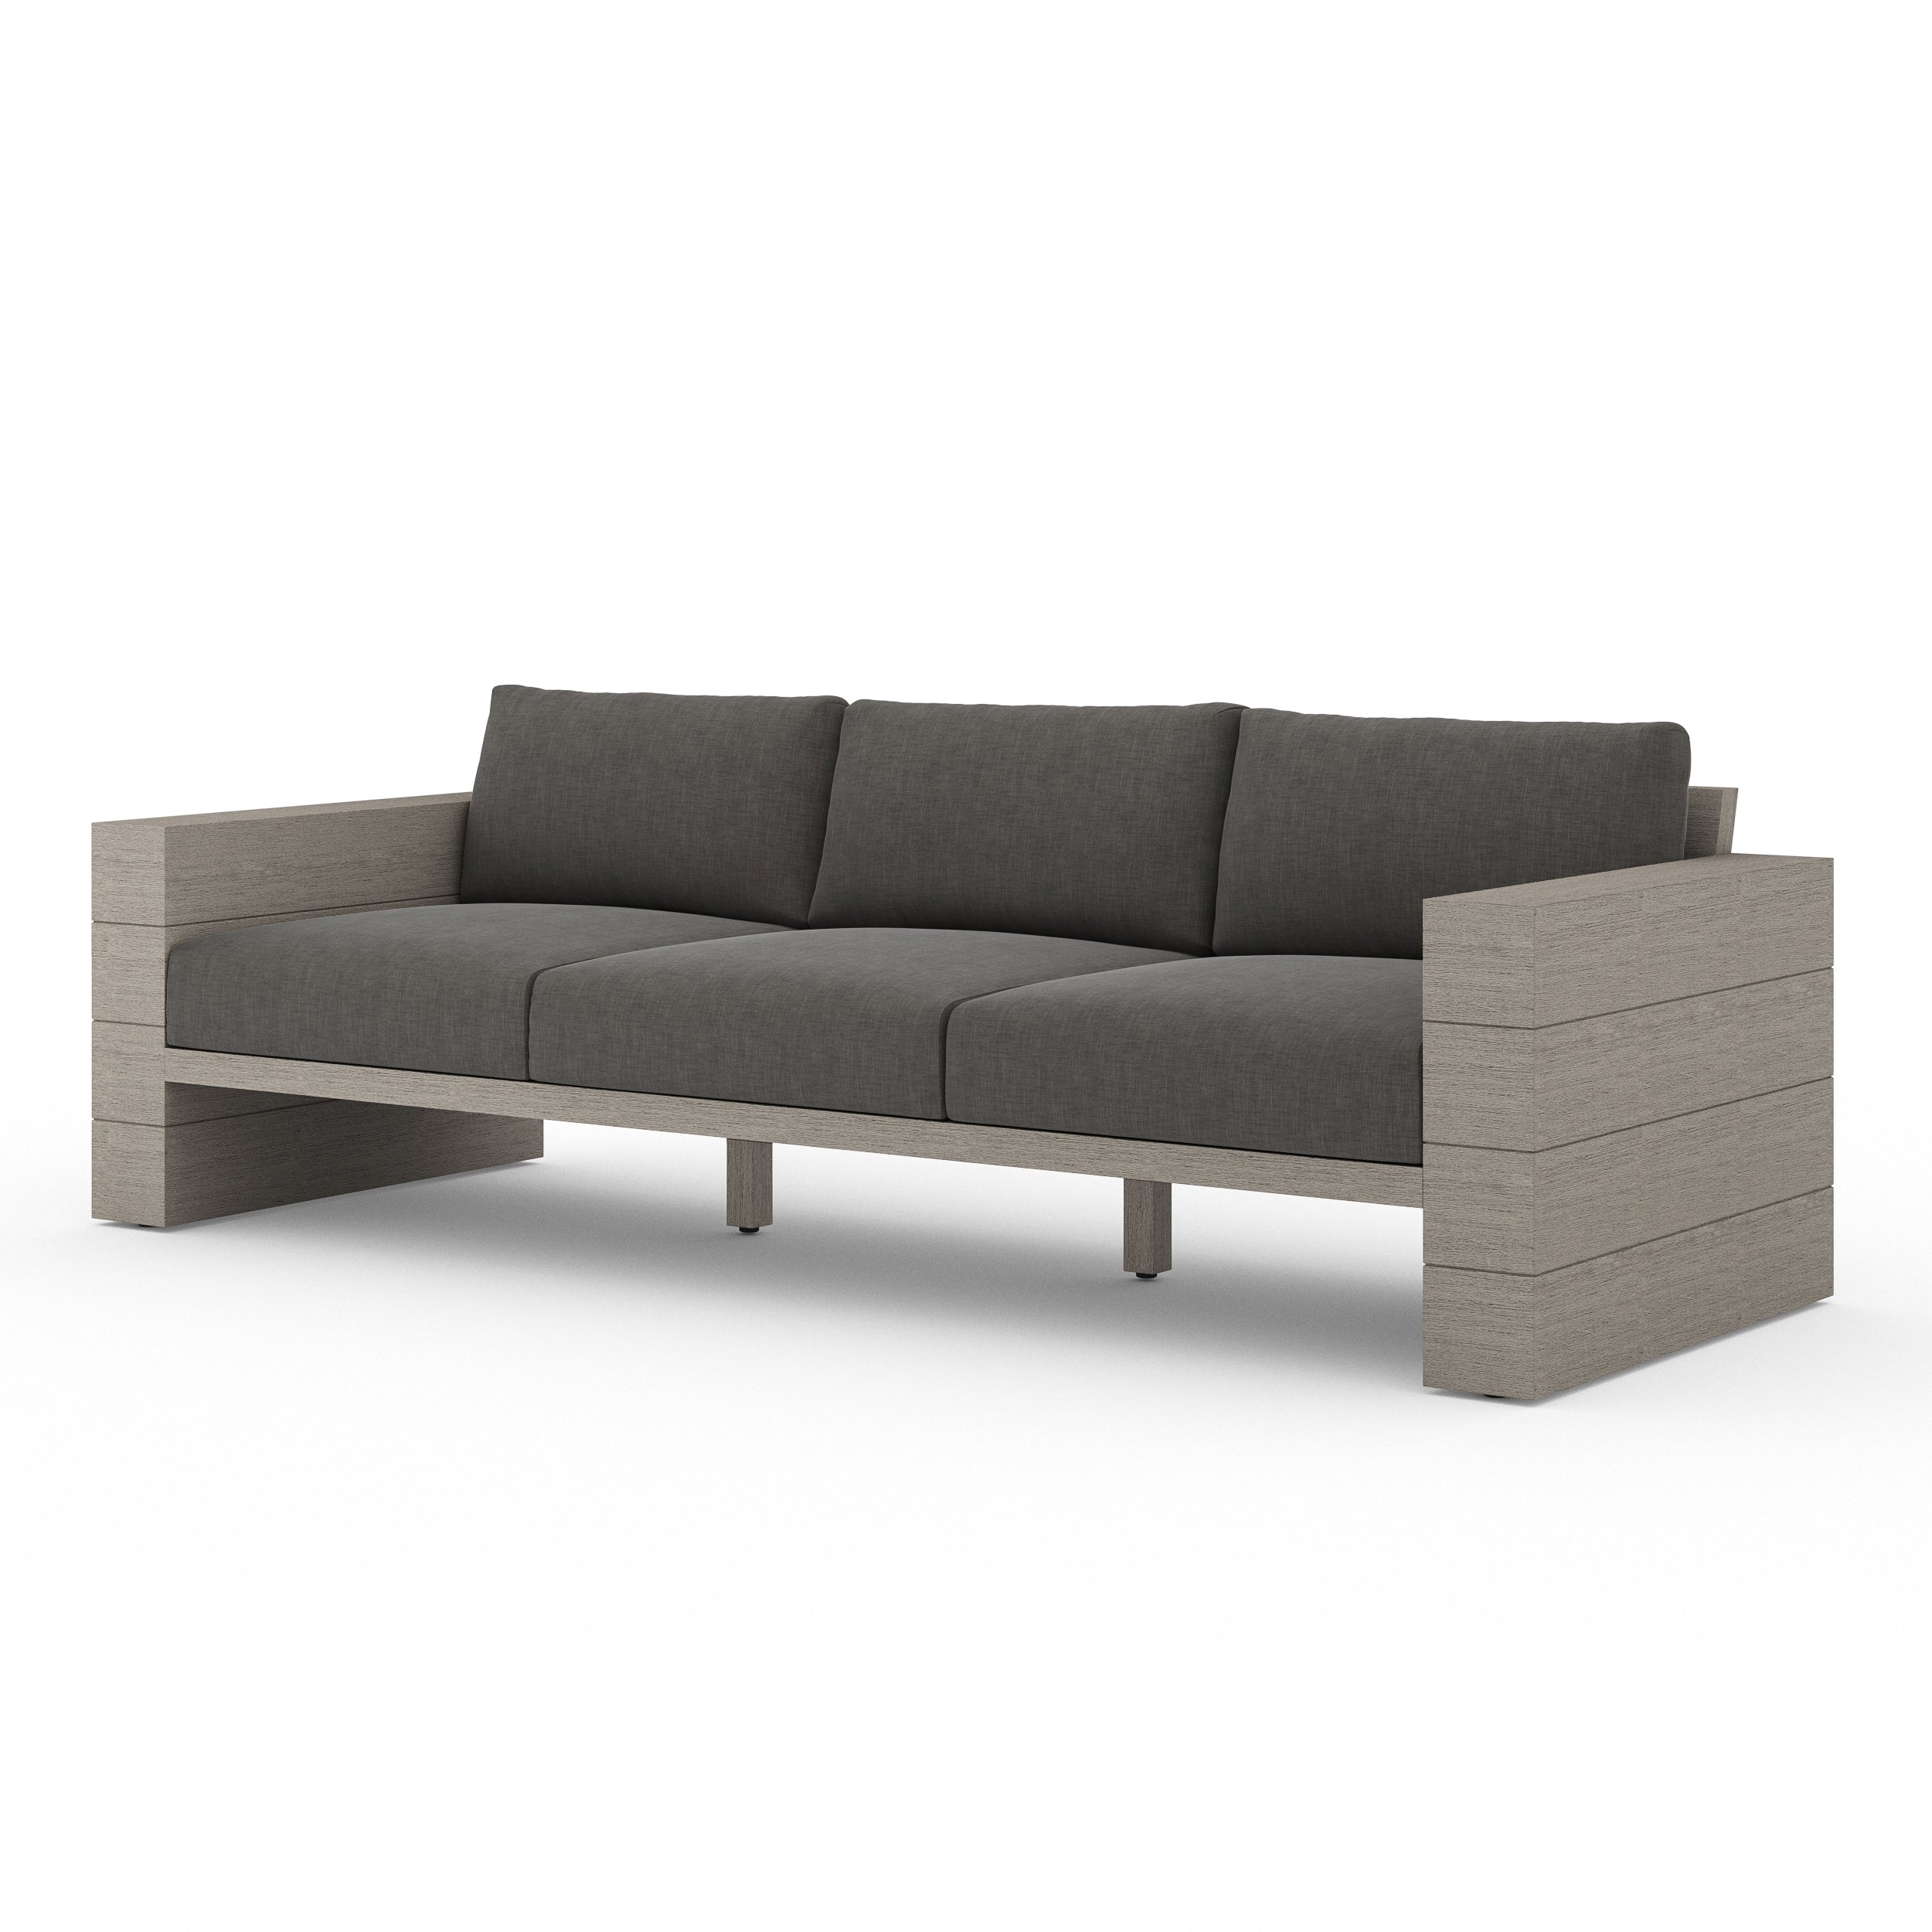 Leroy Outdoor Sofa, Weathered Grey (Charcoal)